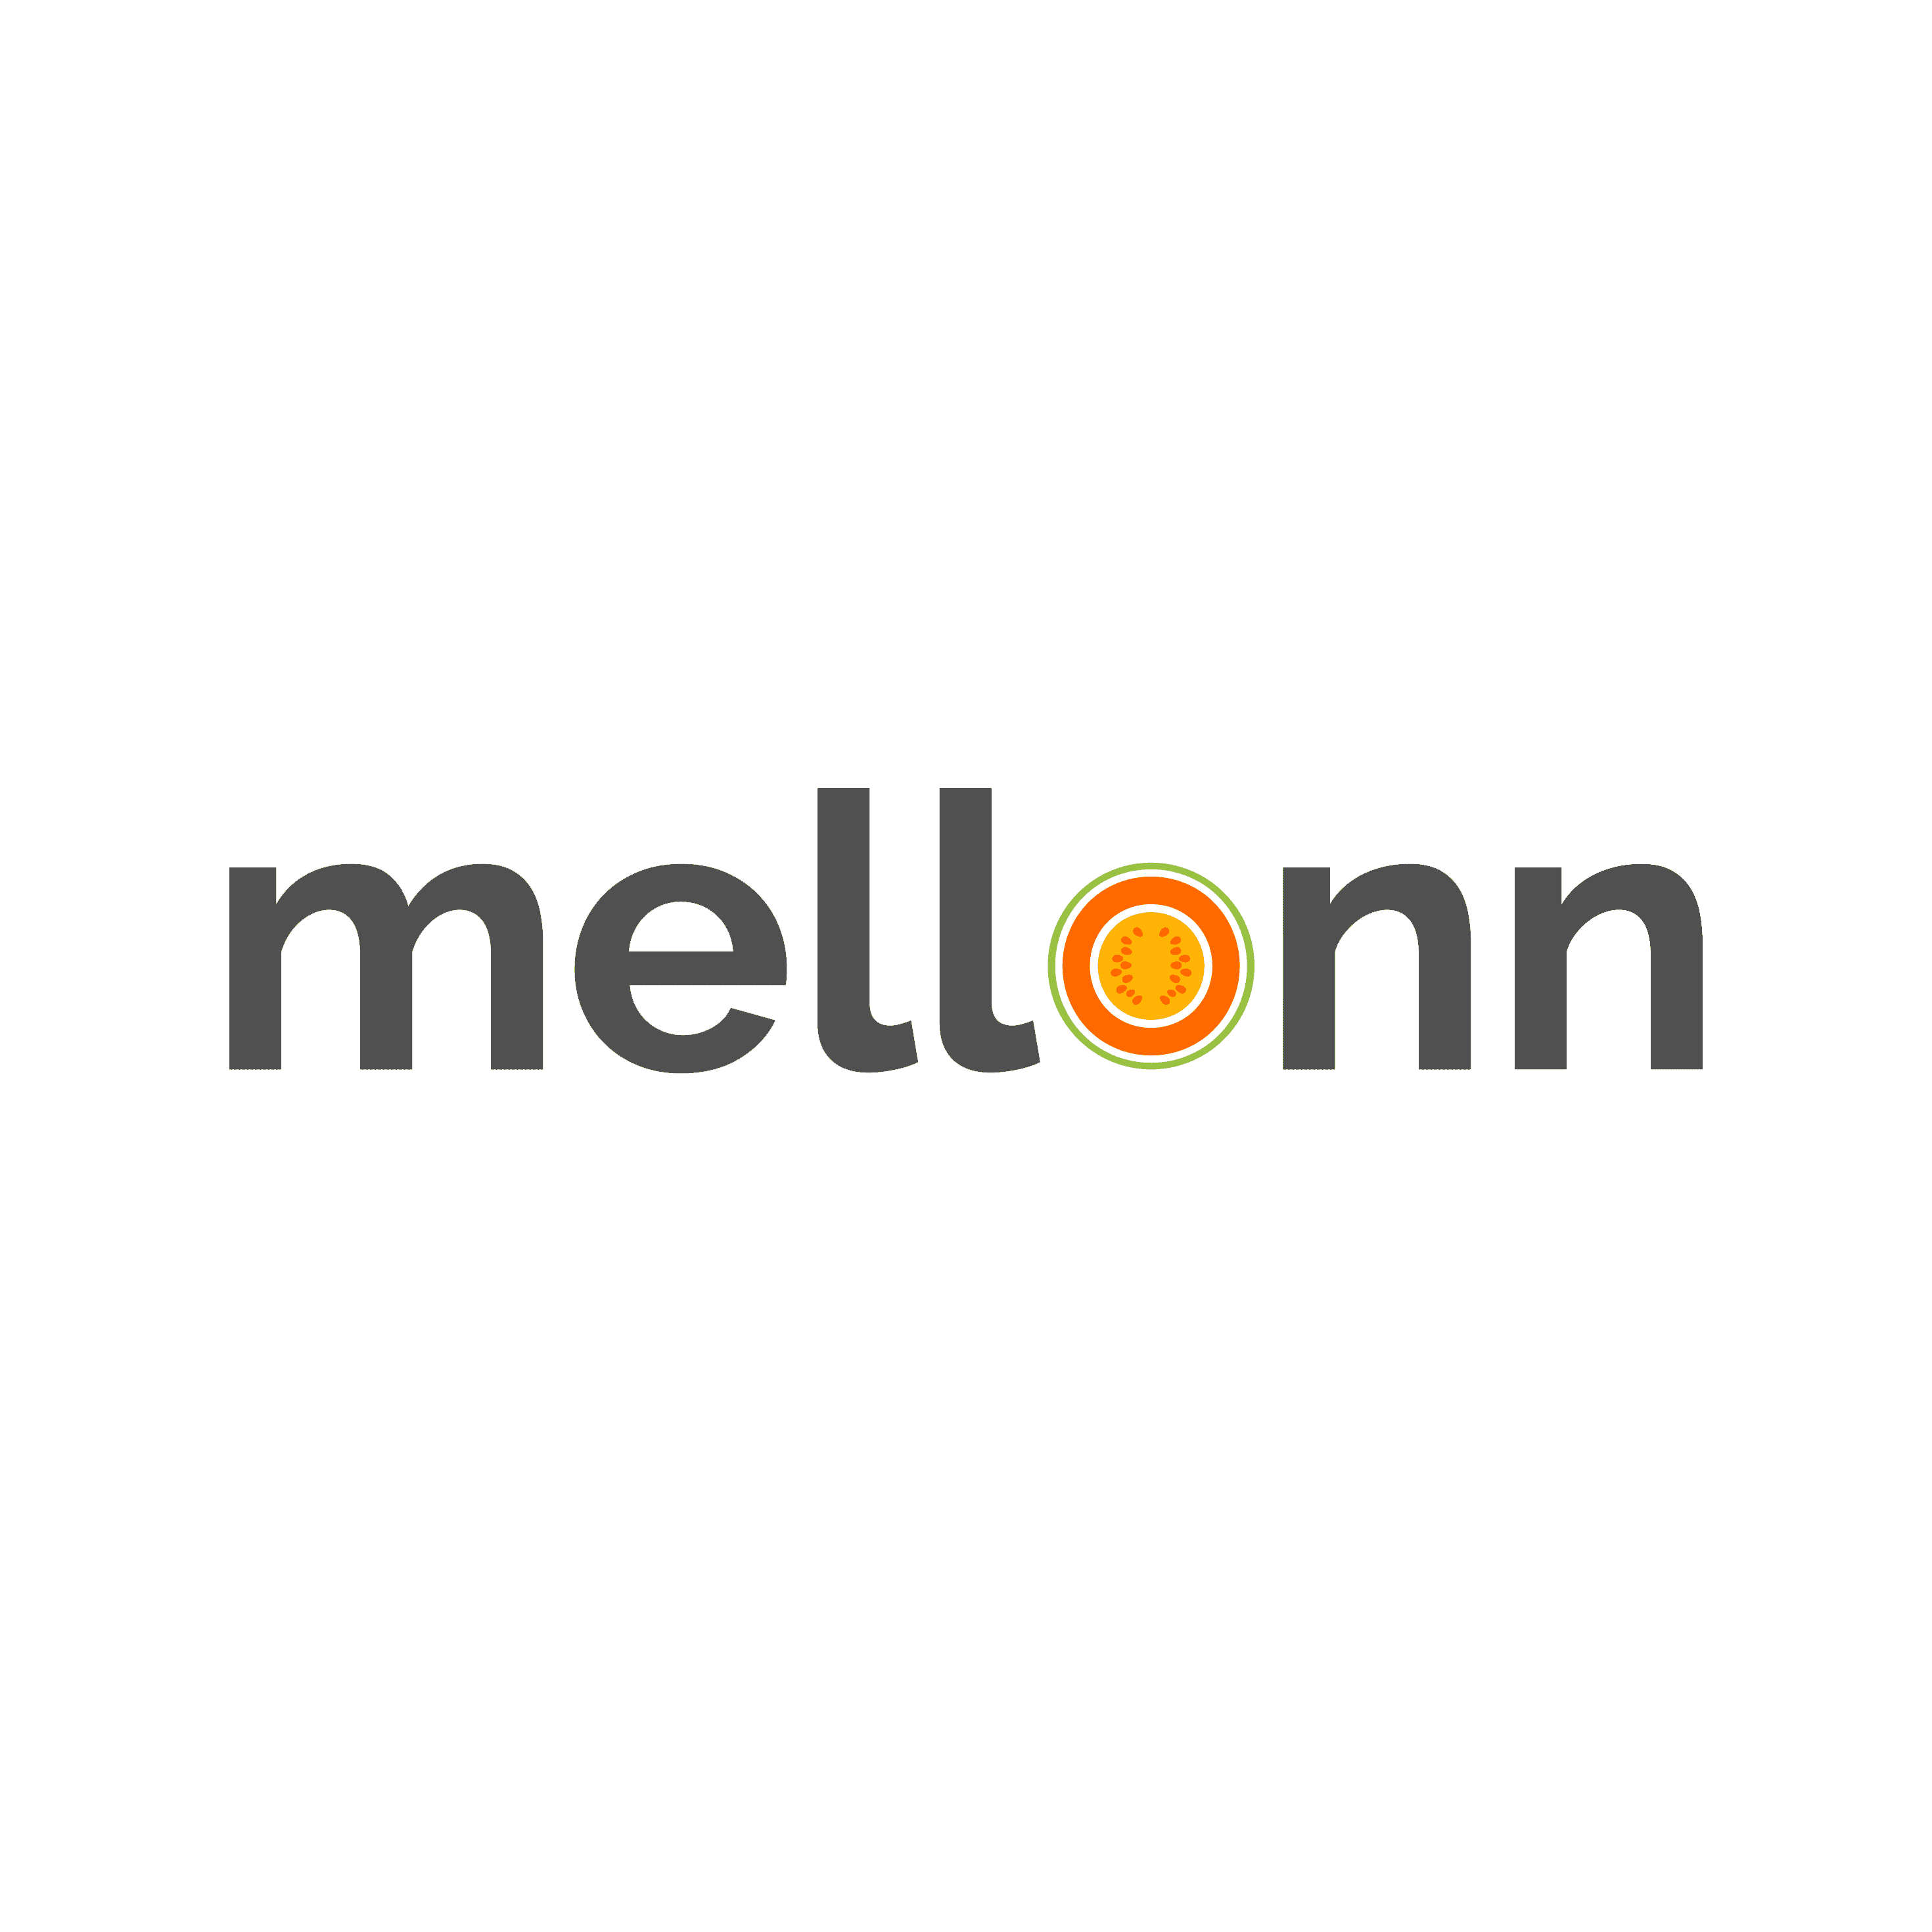 Mellonn